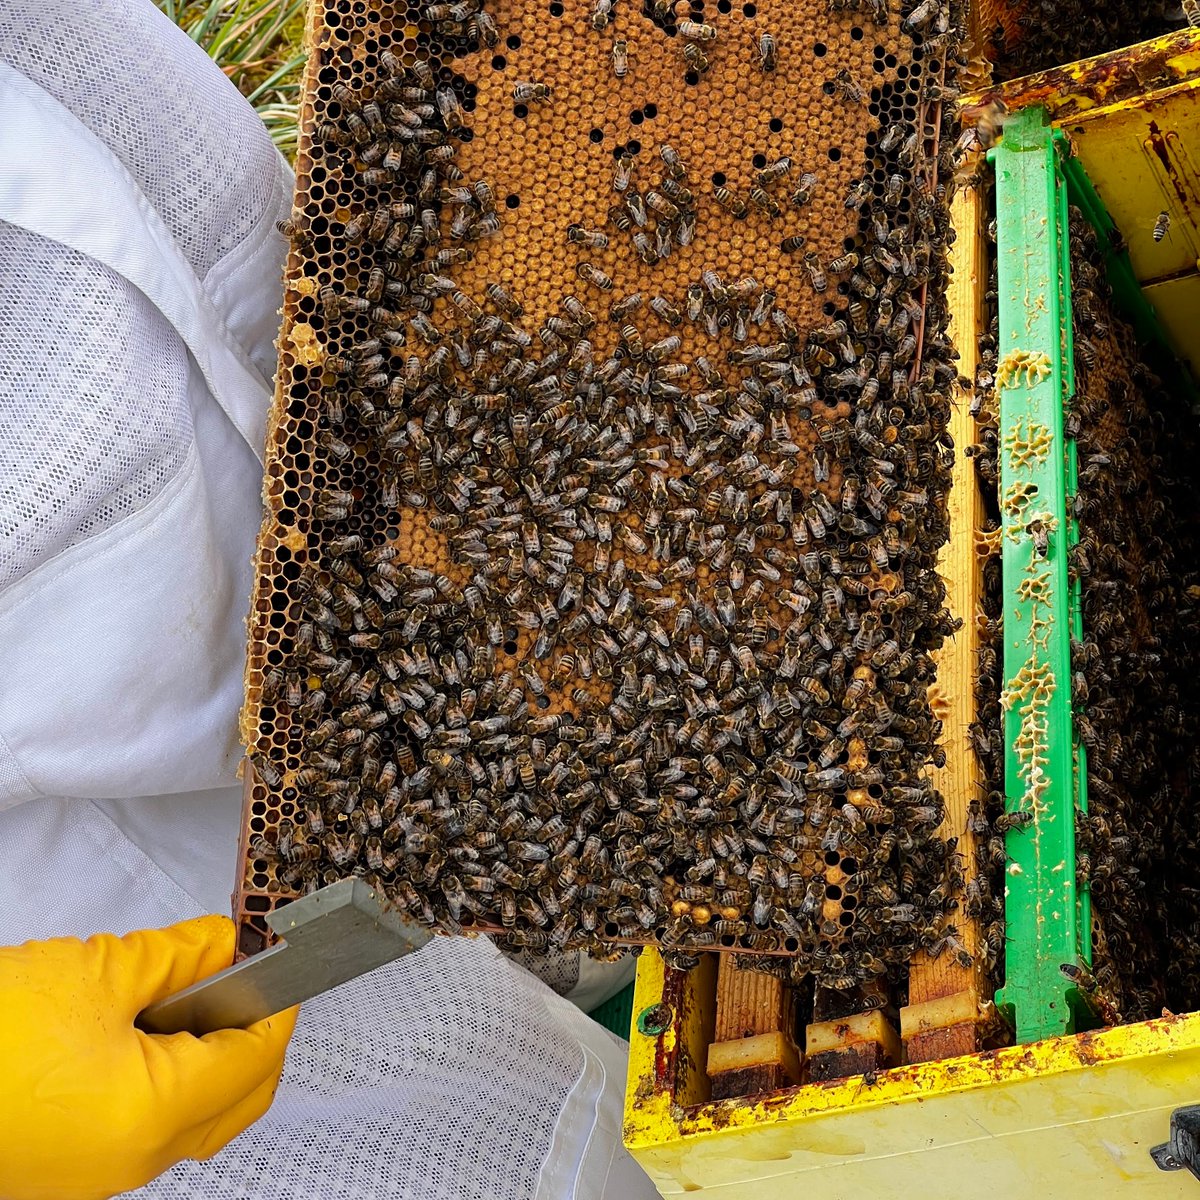 Brood Frame full of sealed worker brood ready to emerge, just in time for the warmer weather, fingers crossed!
#NorfolkHoneyCo
#StewartSpinks
#BeekeepingForAll
#Beekeeping
#Honeybees
#BeeFarmer